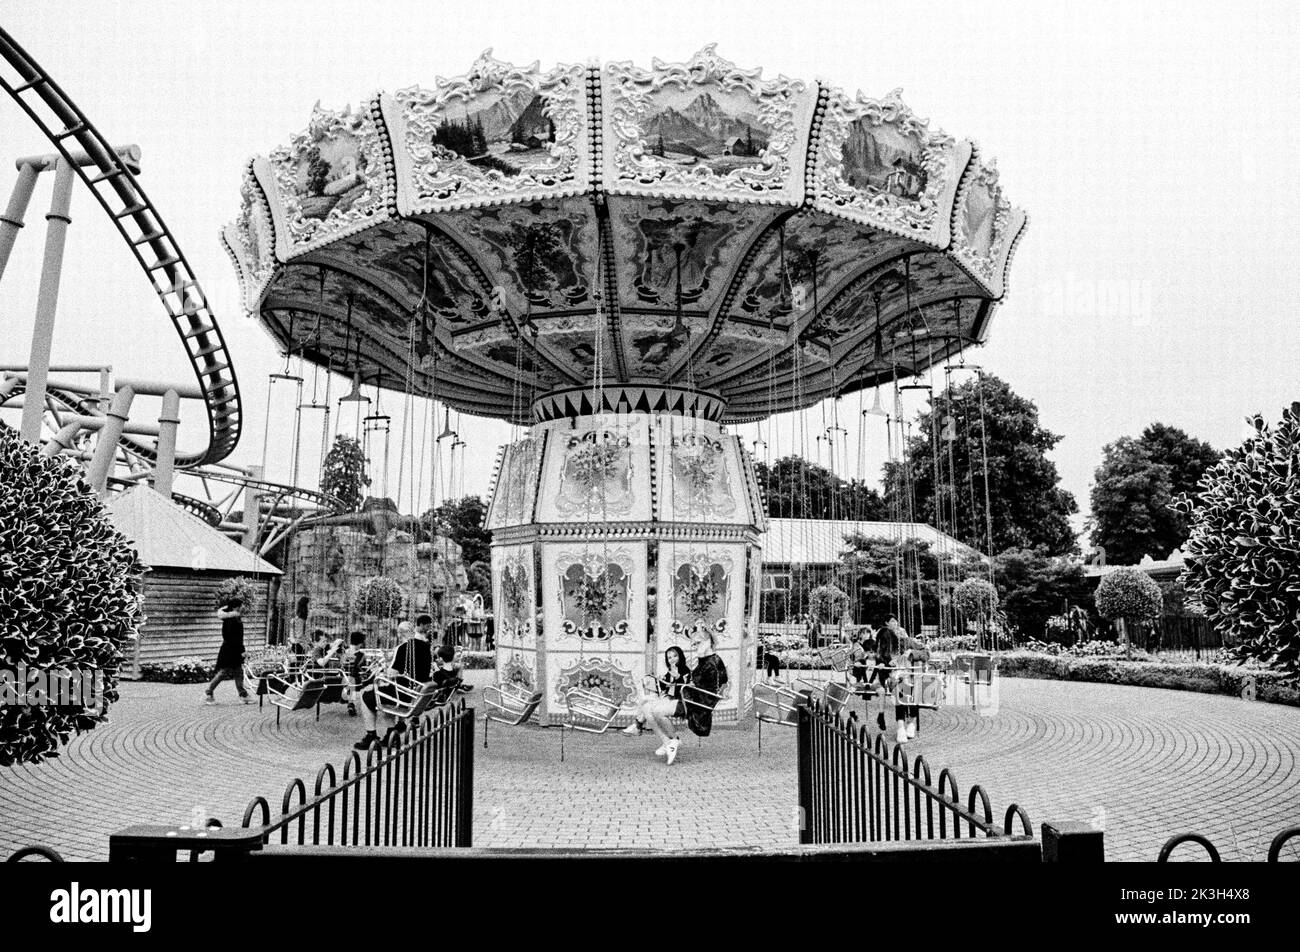 El cielo Swinger recinto ferial ride Paultons Park, Southampton, Inglaterra, Reino Unido. Foto de stock